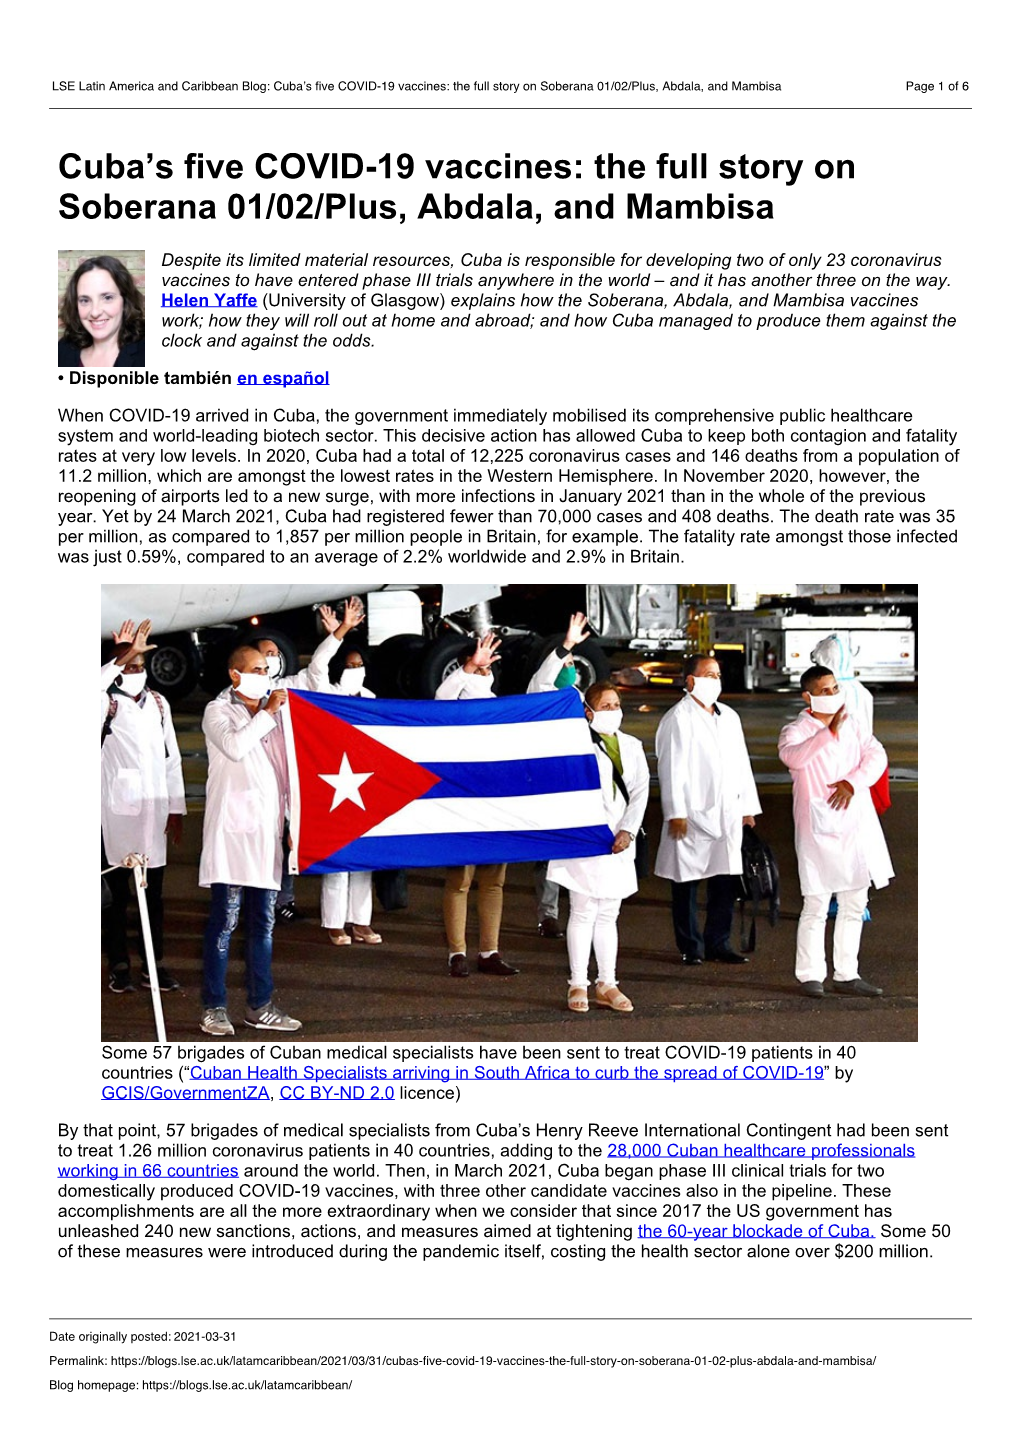 Cuba's Five COVID-19 Vaccines